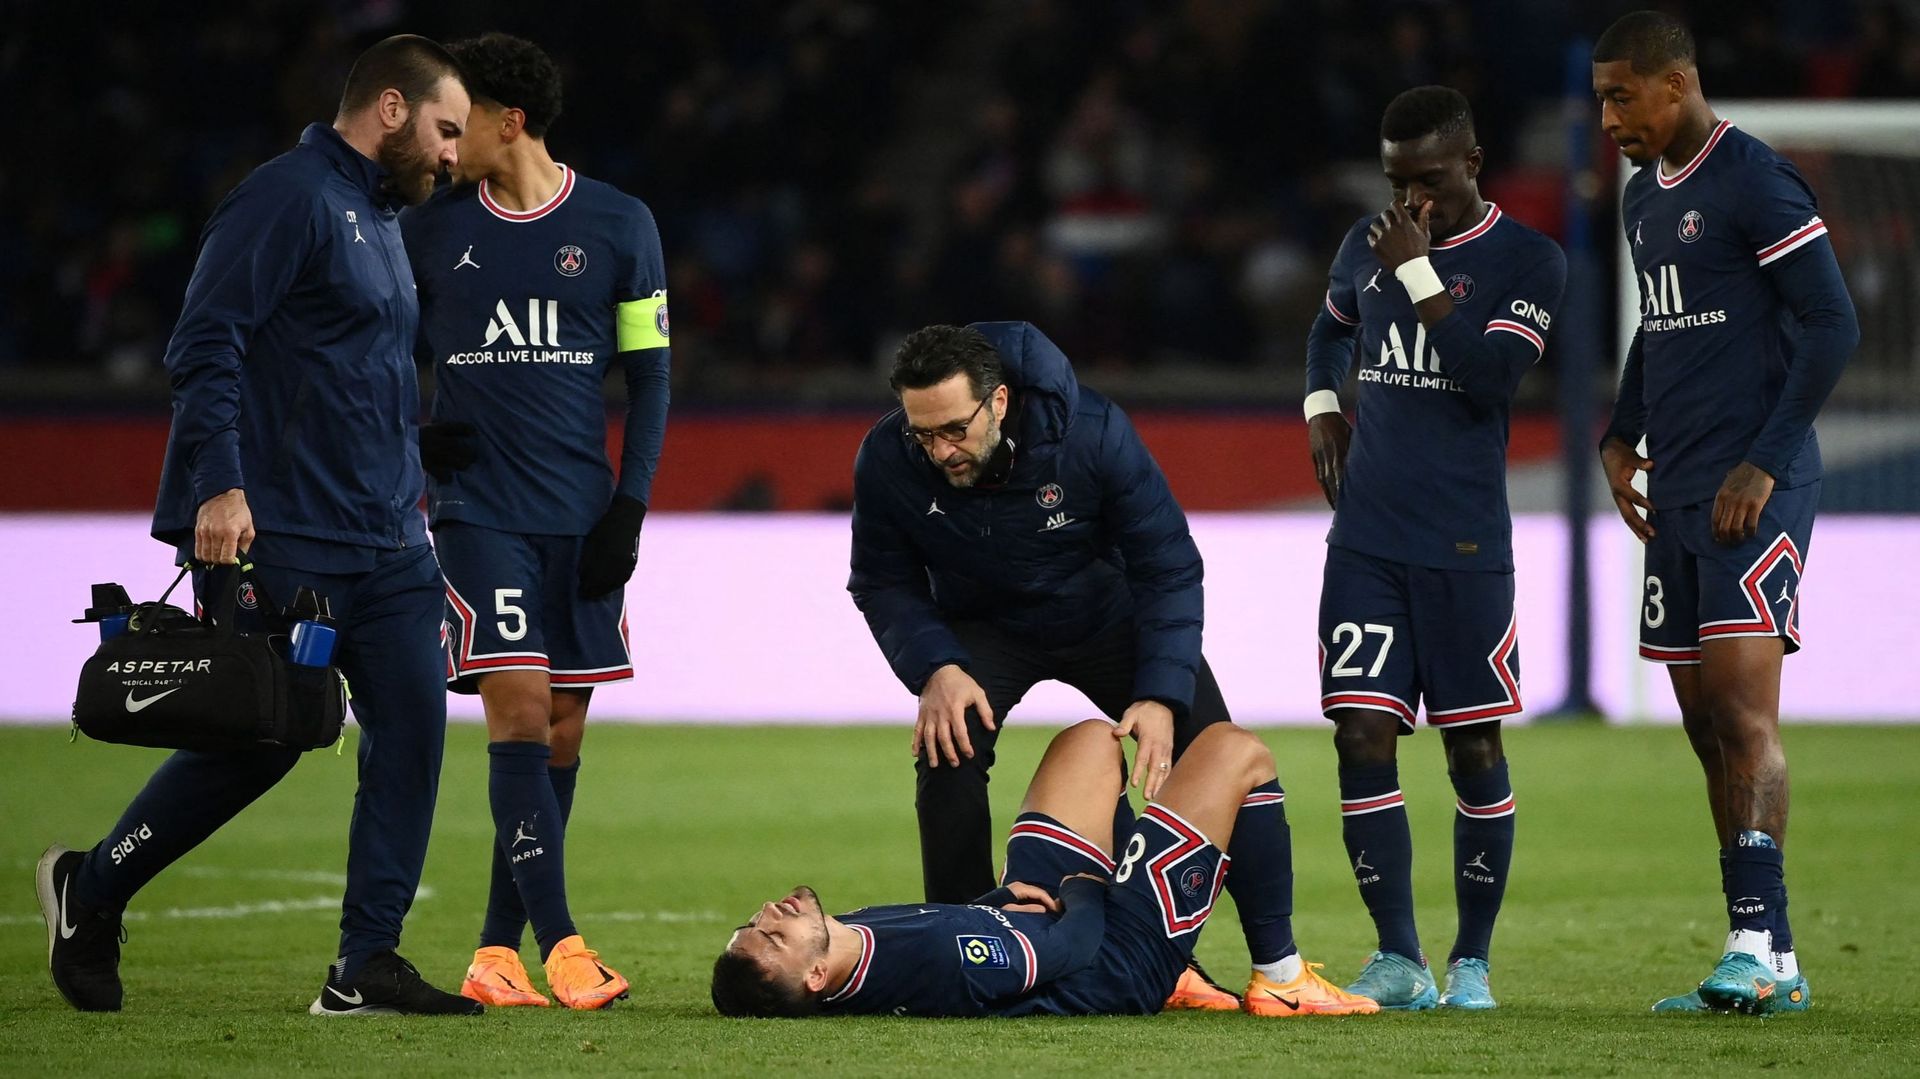 Le milieu argentin du Paris Saint-Germain Leandro Paredes souffre d'une pubalgie, a-t-on appris mardi auprès de son entourage, et sa saison est probablement terminée.